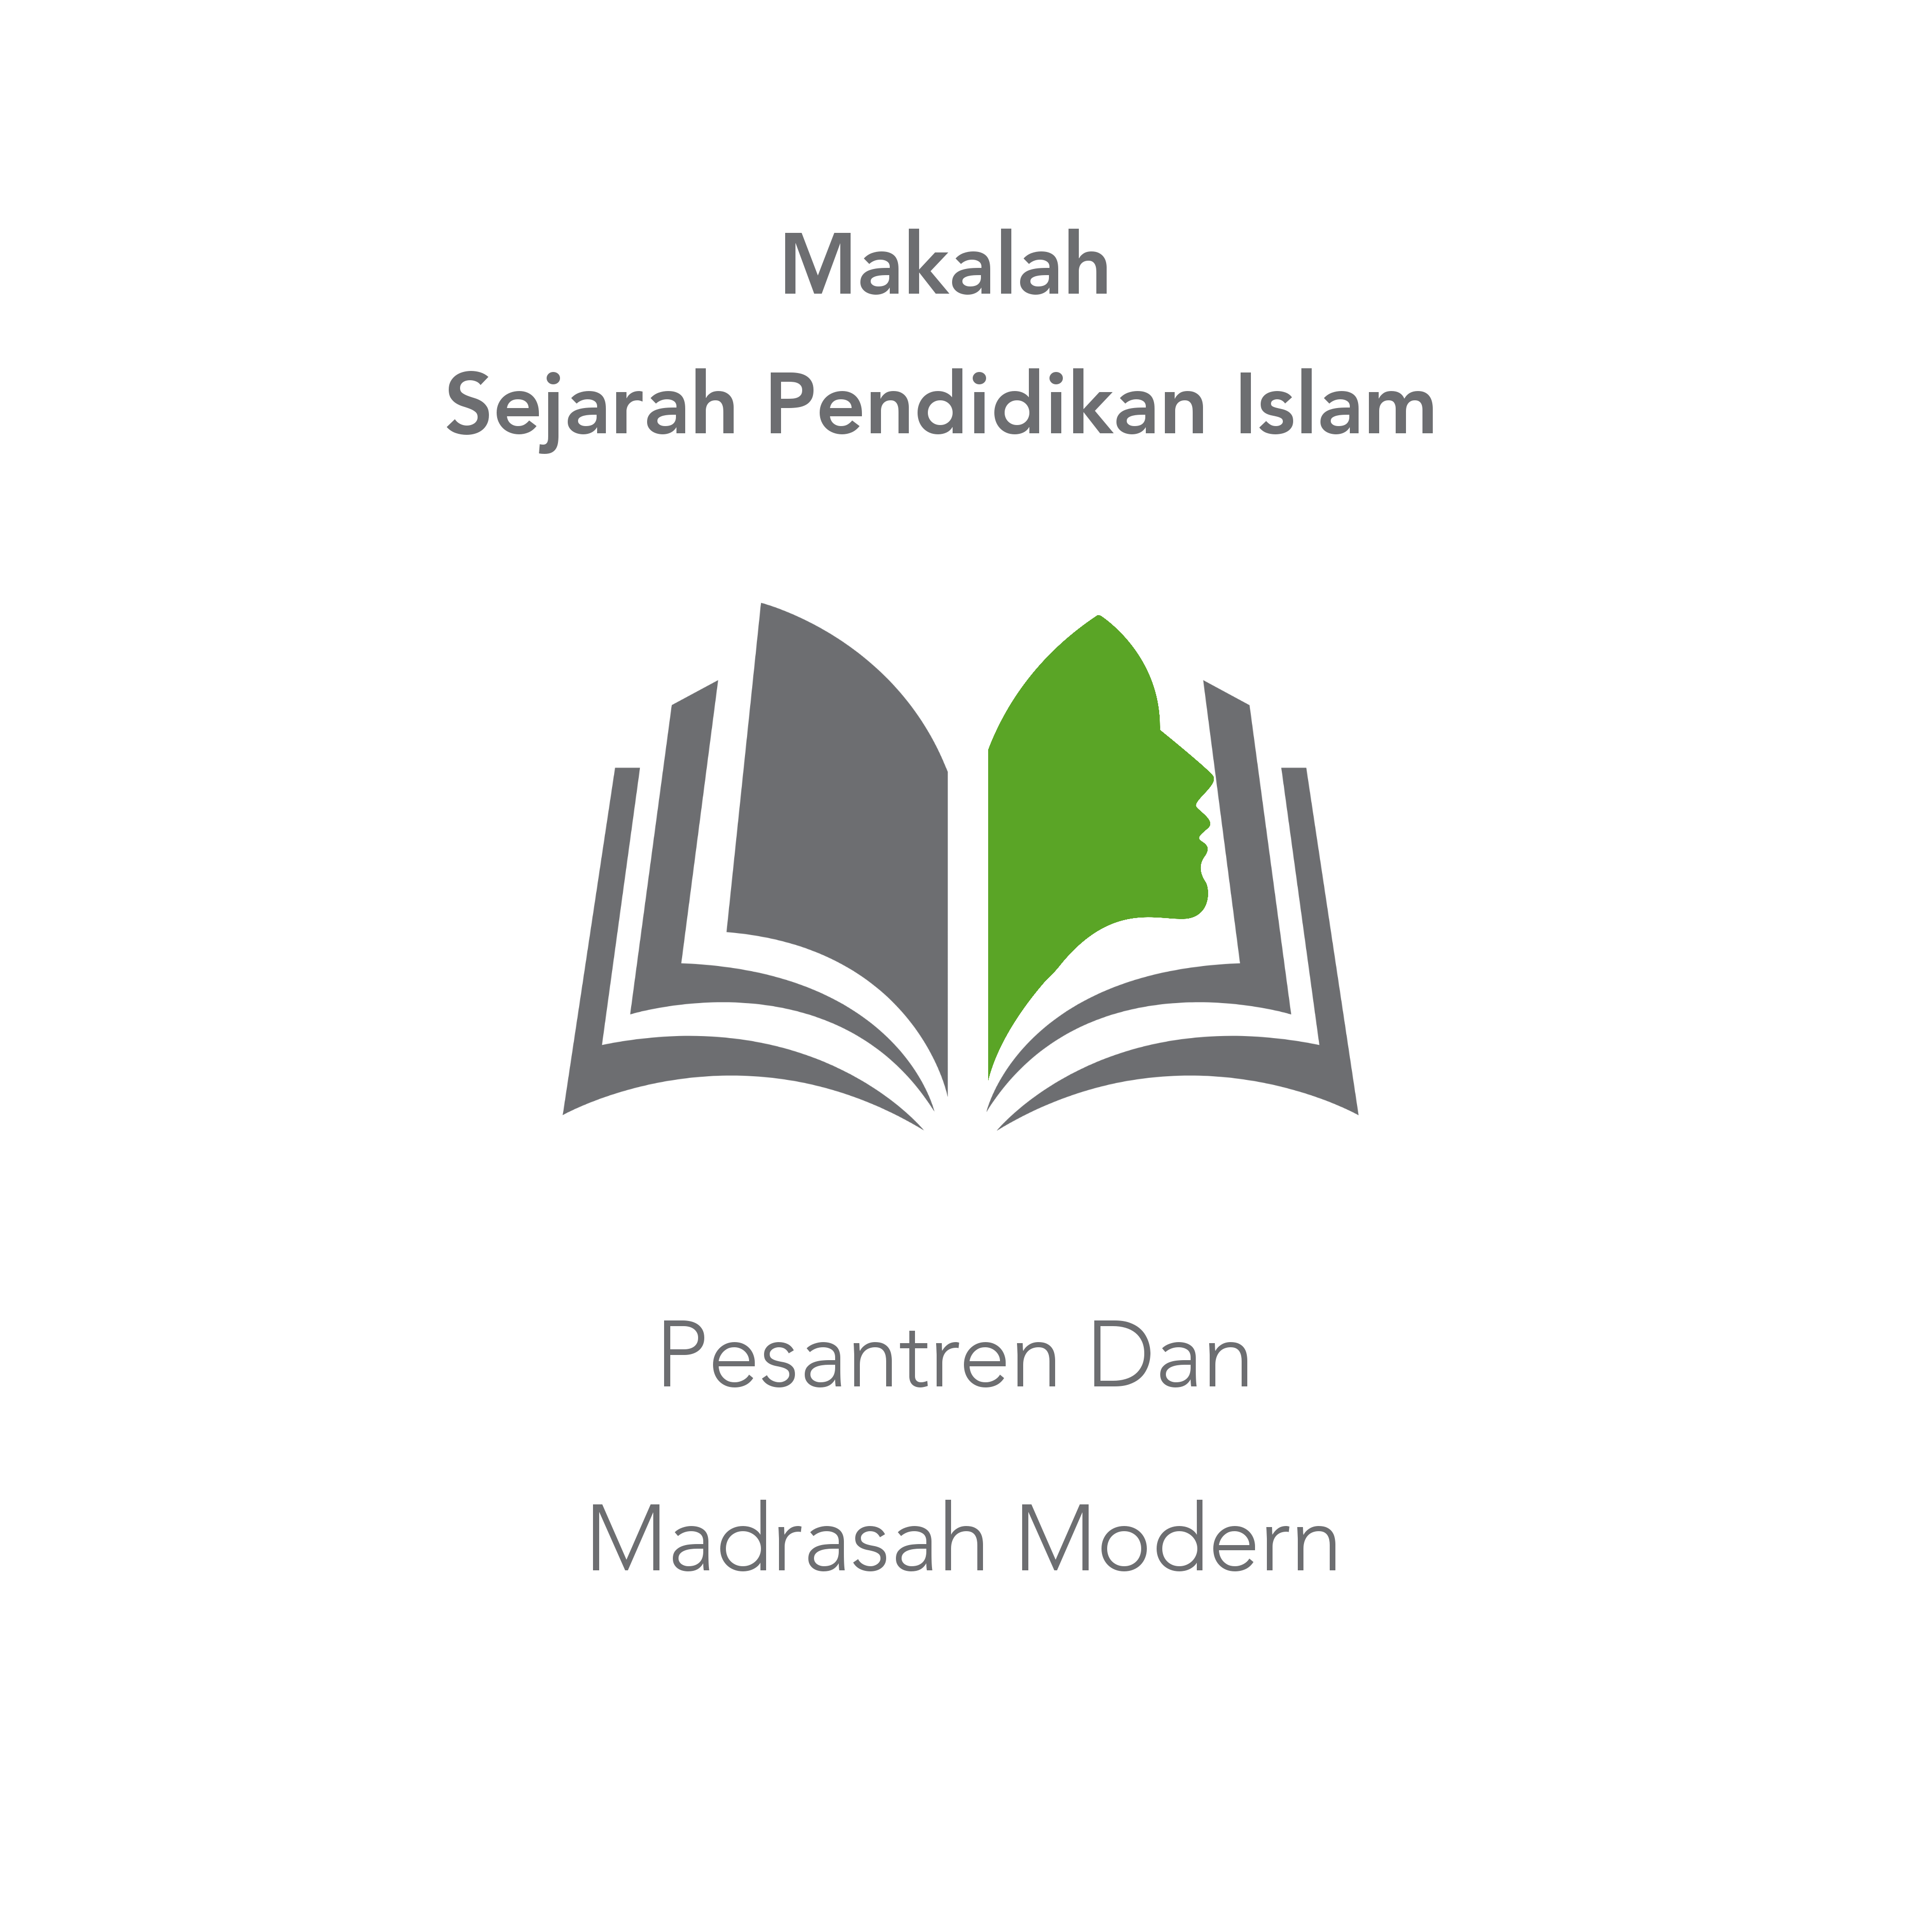 Makalah Sejarah Pendidikan Islam: Pesantren dan Madrasah Modern